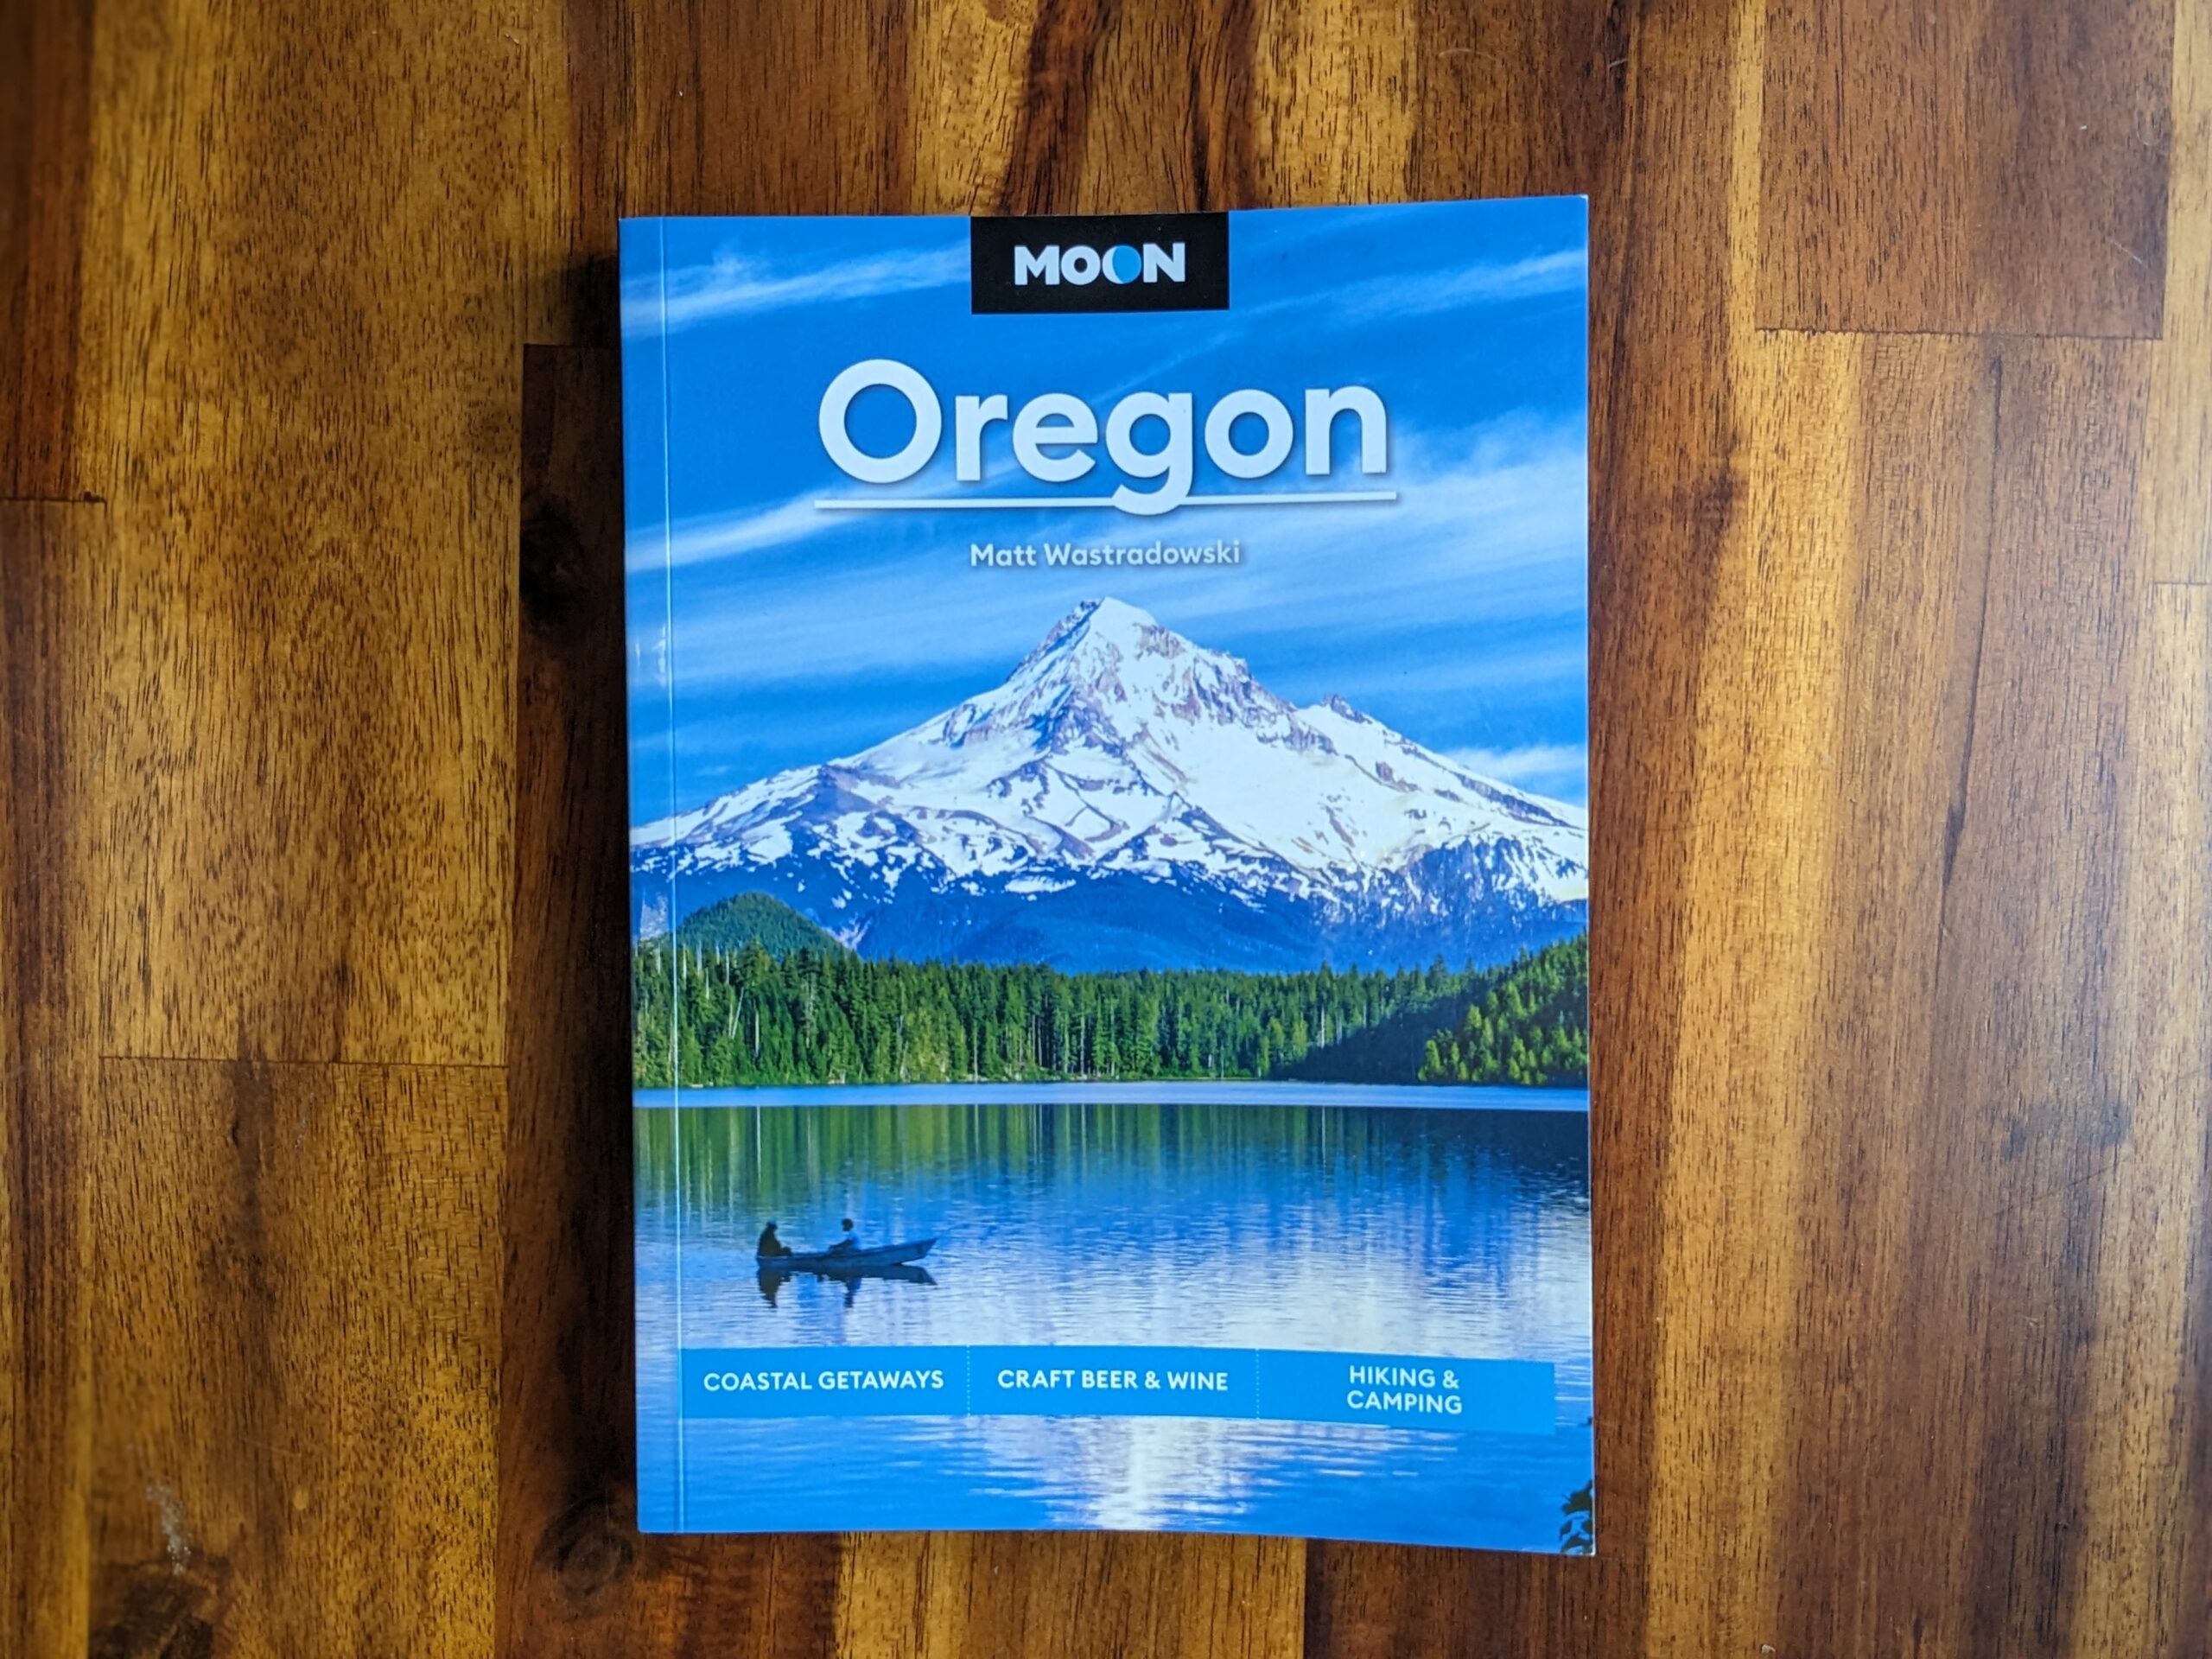 Moon Oregon guidebook